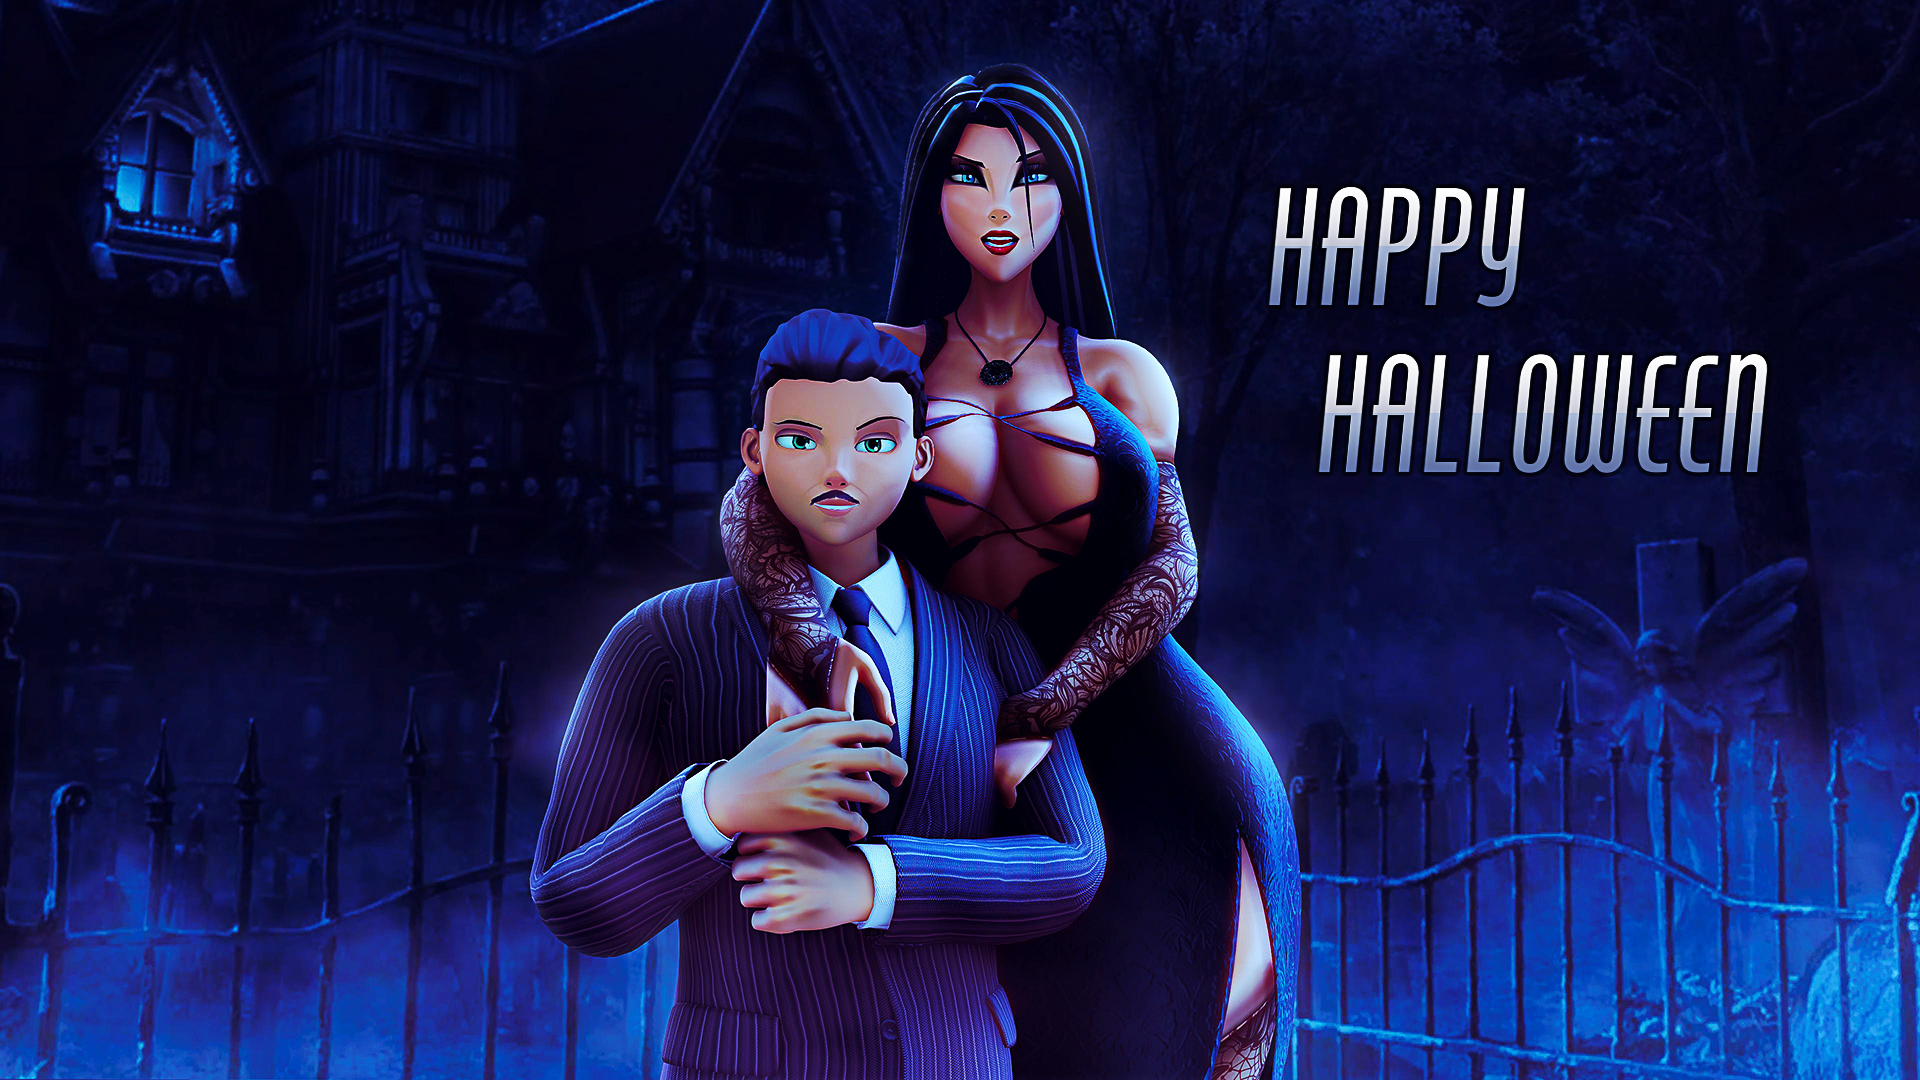 Happy spooky halloween! thanks. 